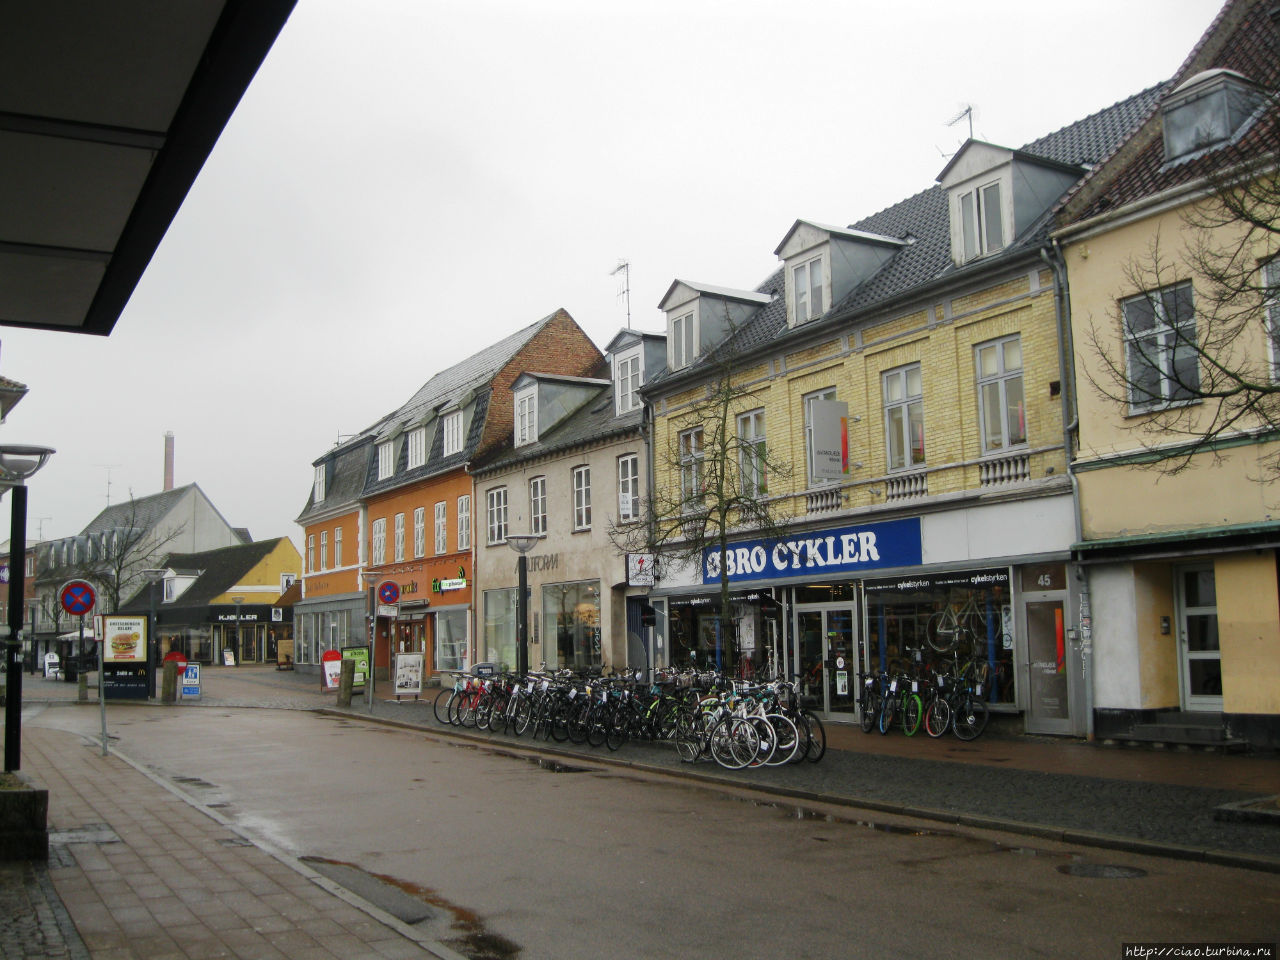 Экспресс-тур в Данию. Часть 2 –  Хиллерёд. Хиллерёд, Дания